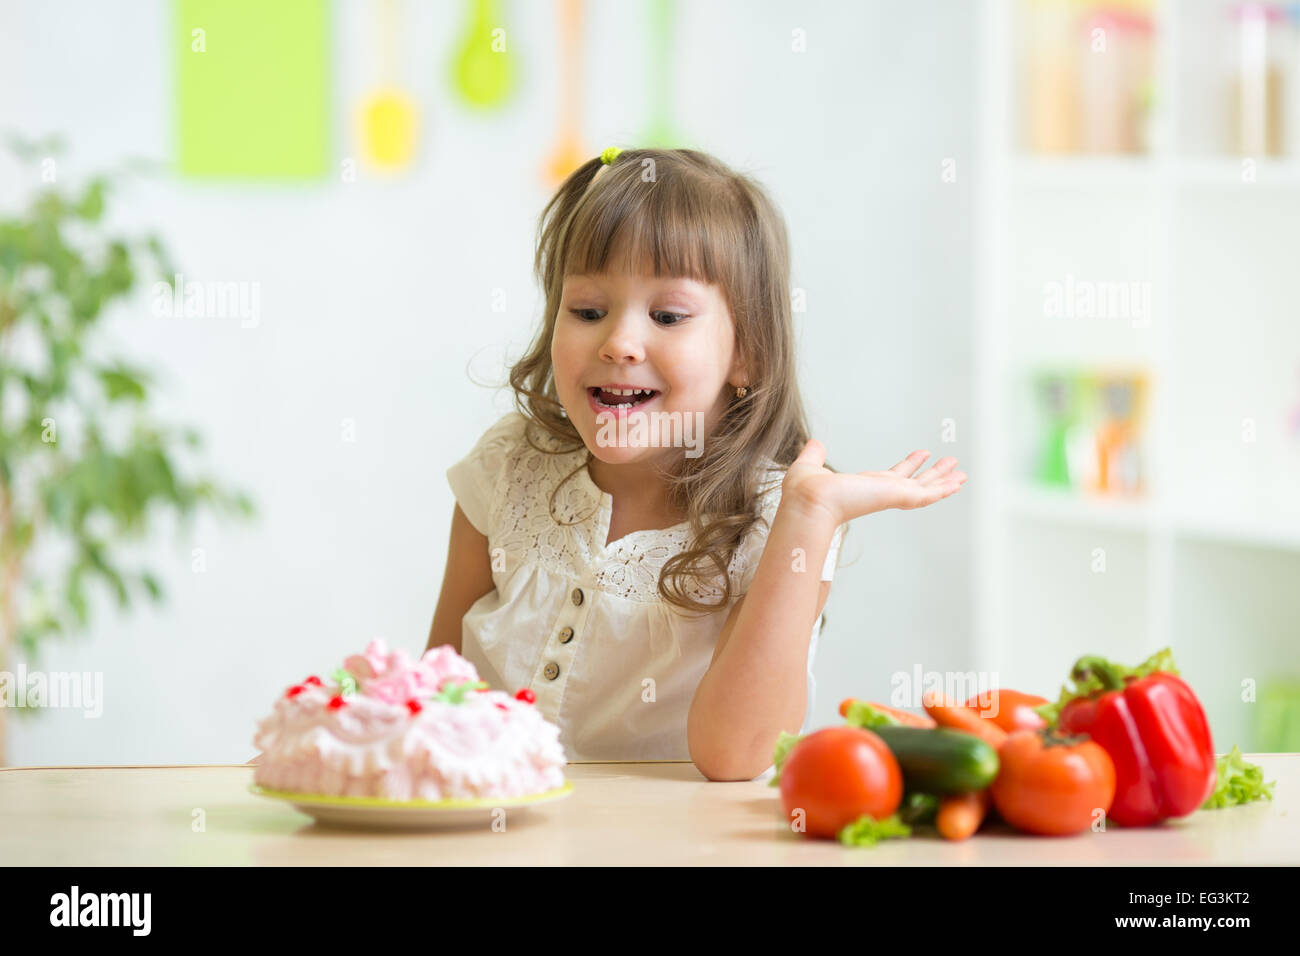 kid choosing between healthy vegetables and tasty cake Stock Photo